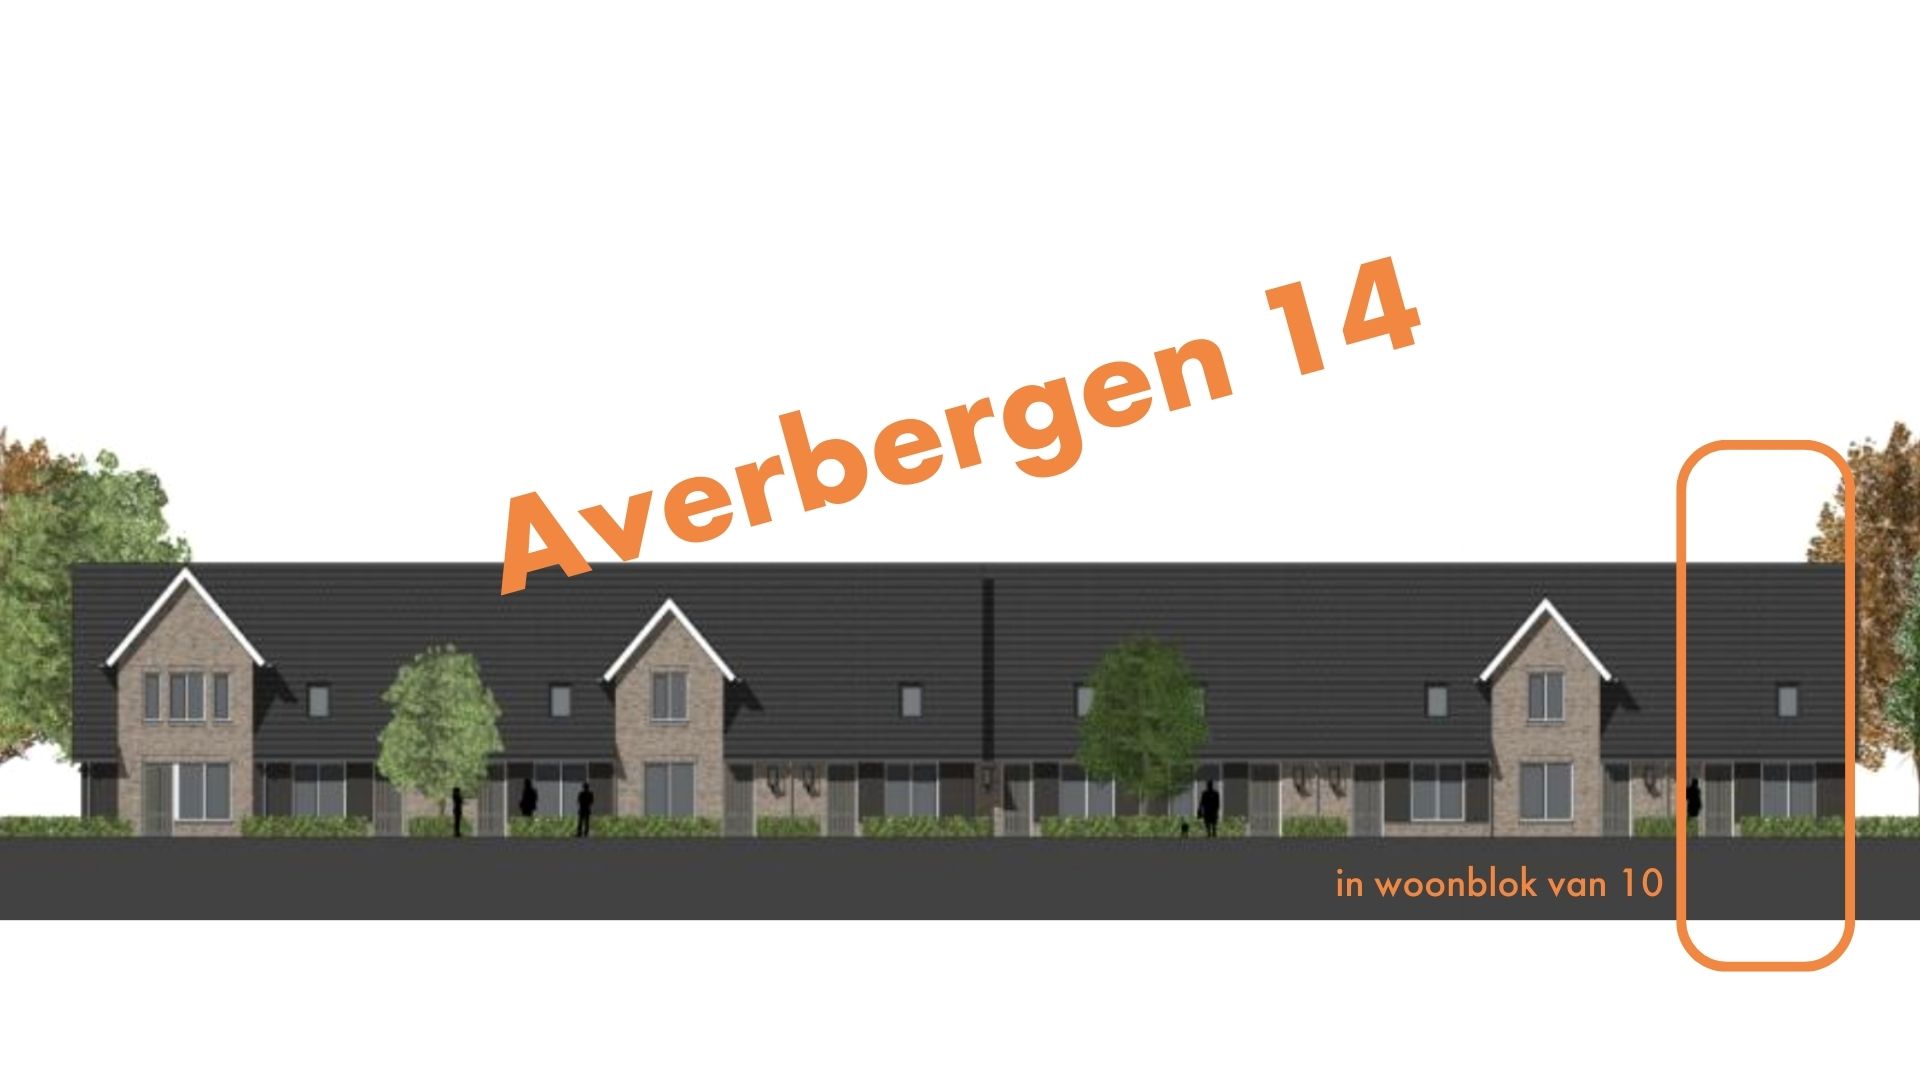 Averbergen 14